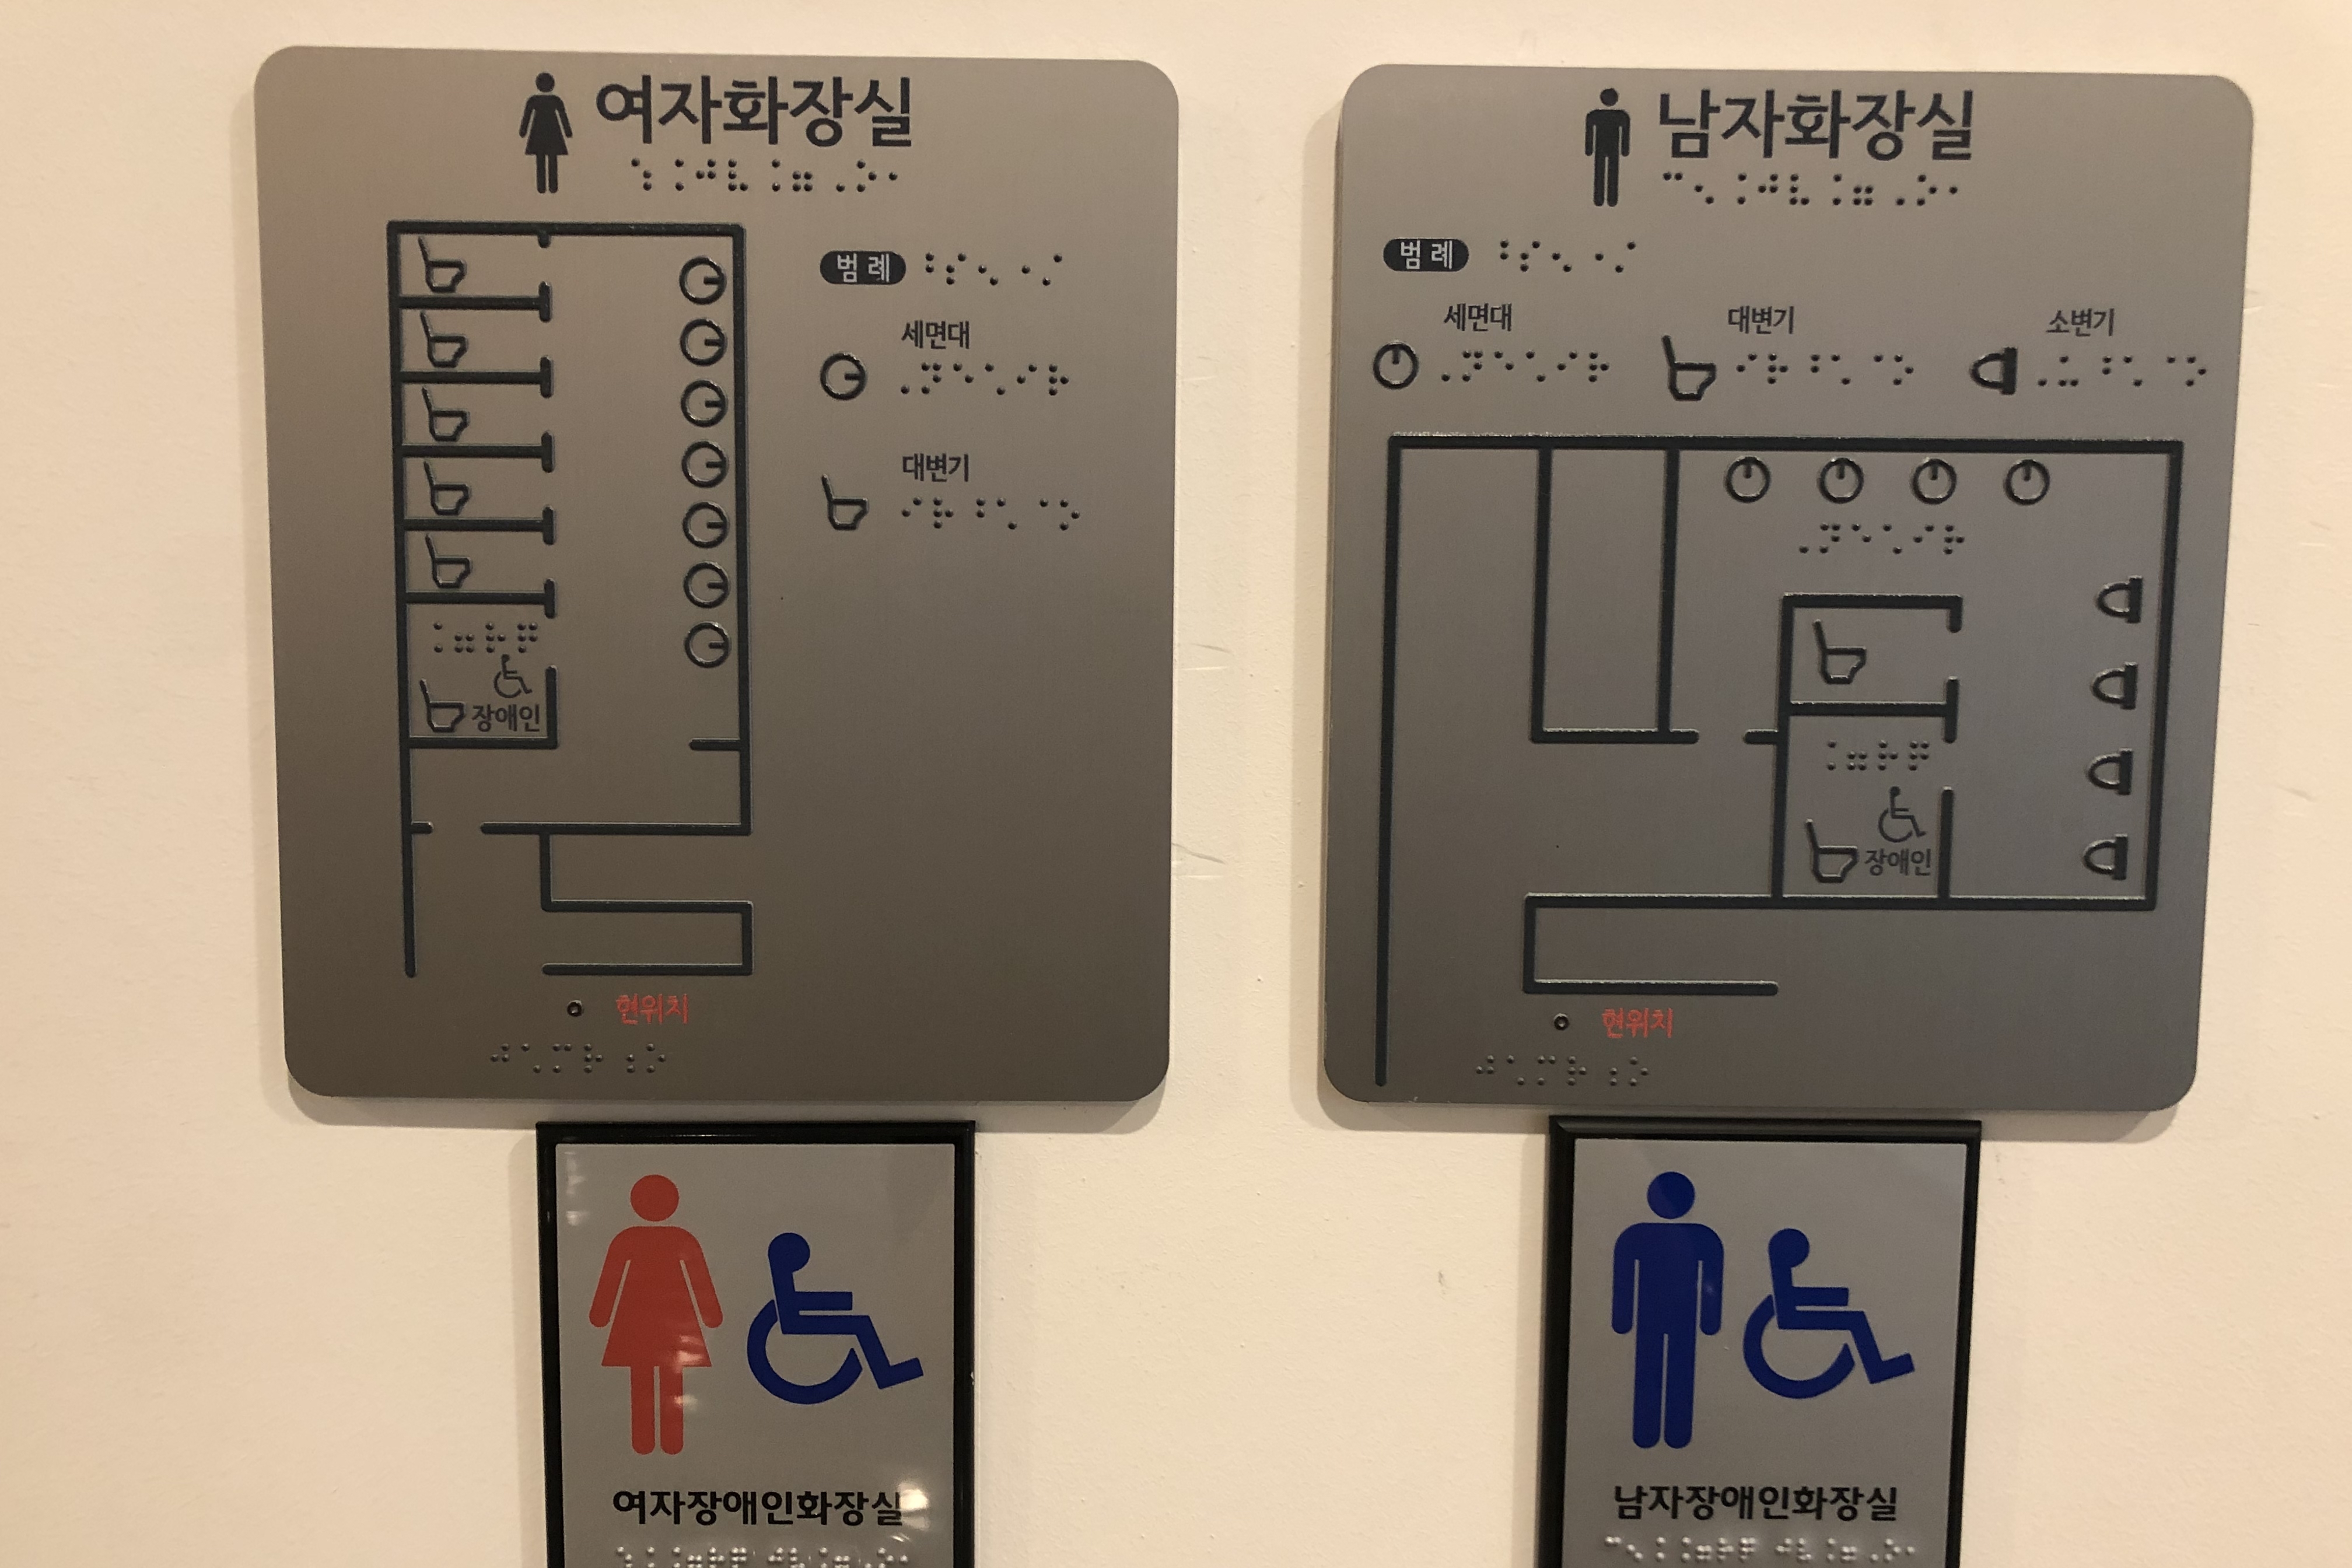 장애인 화장실0 : 여자화장실, 남자화장실 점자안내판